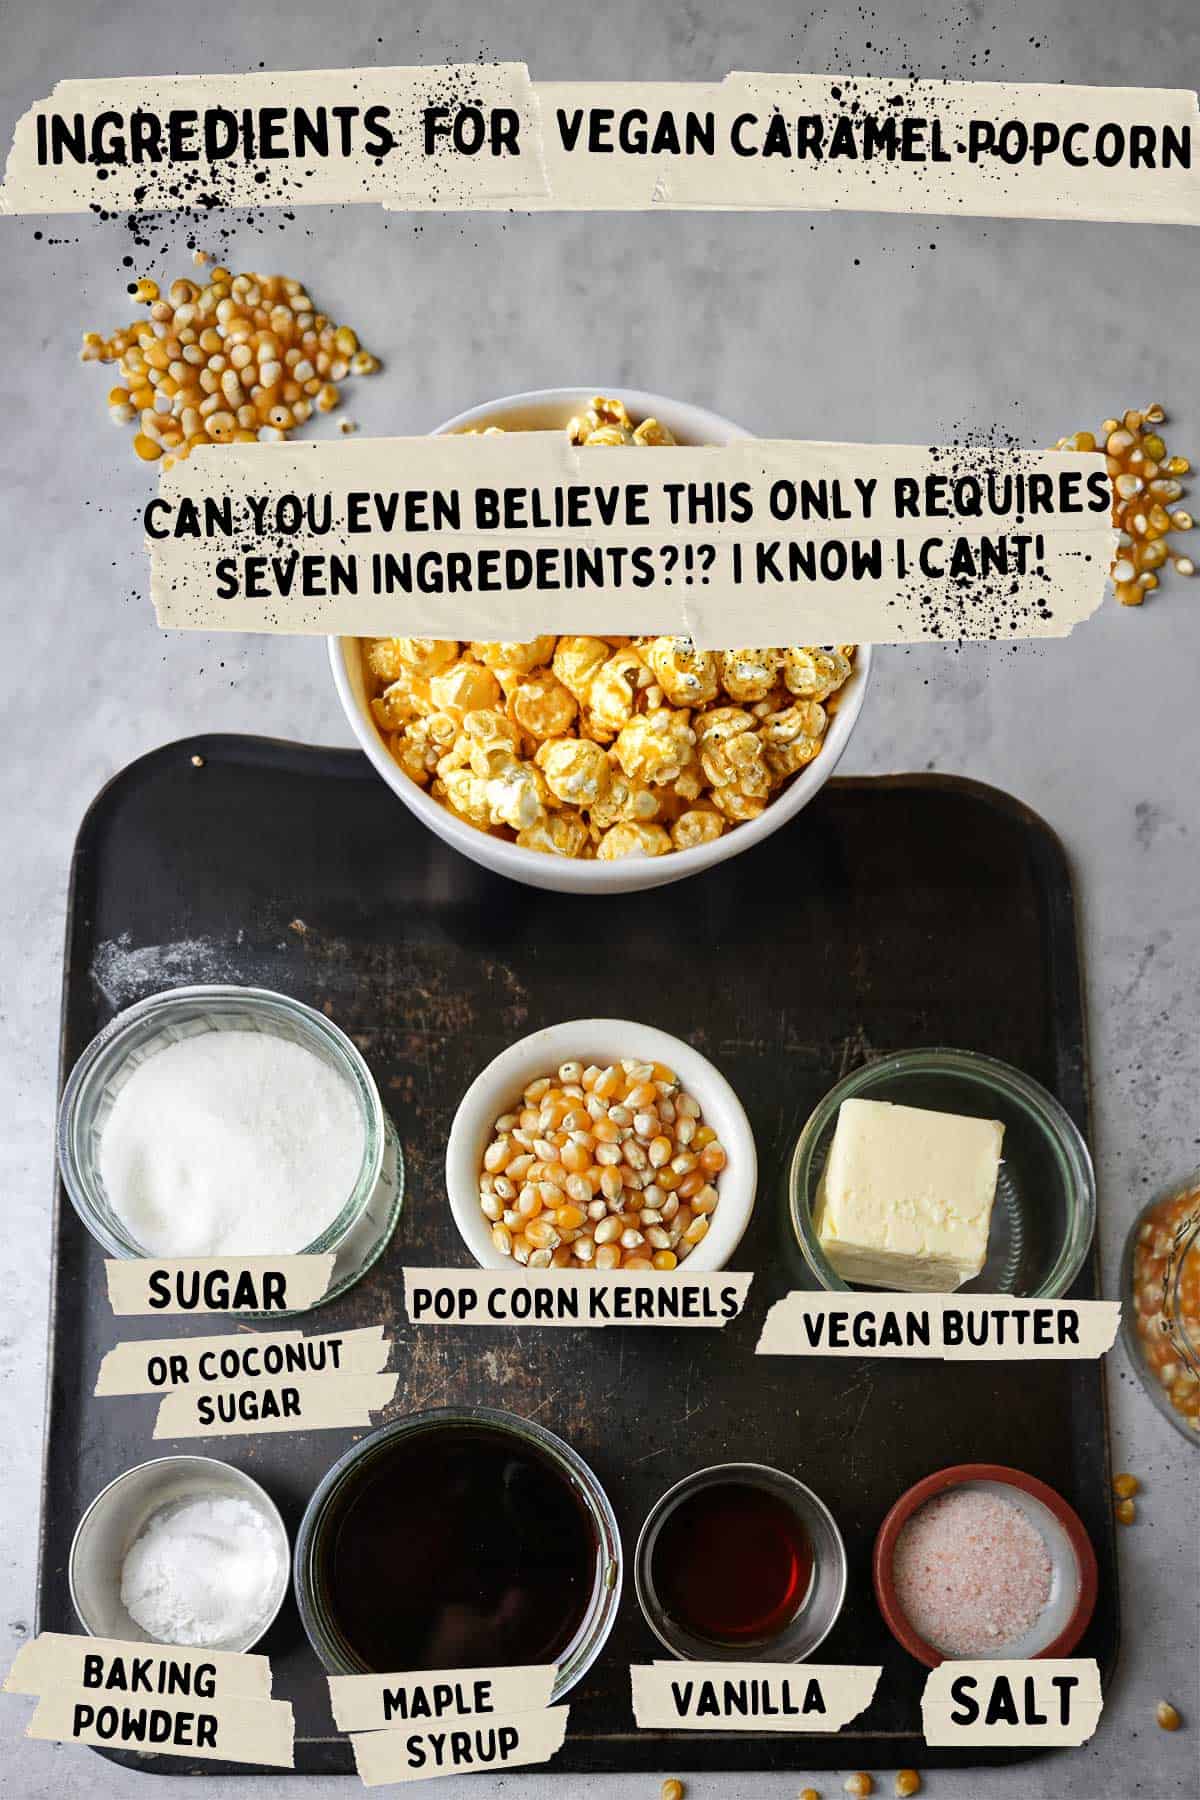 Ingredients for vegan caramel popcorn. 